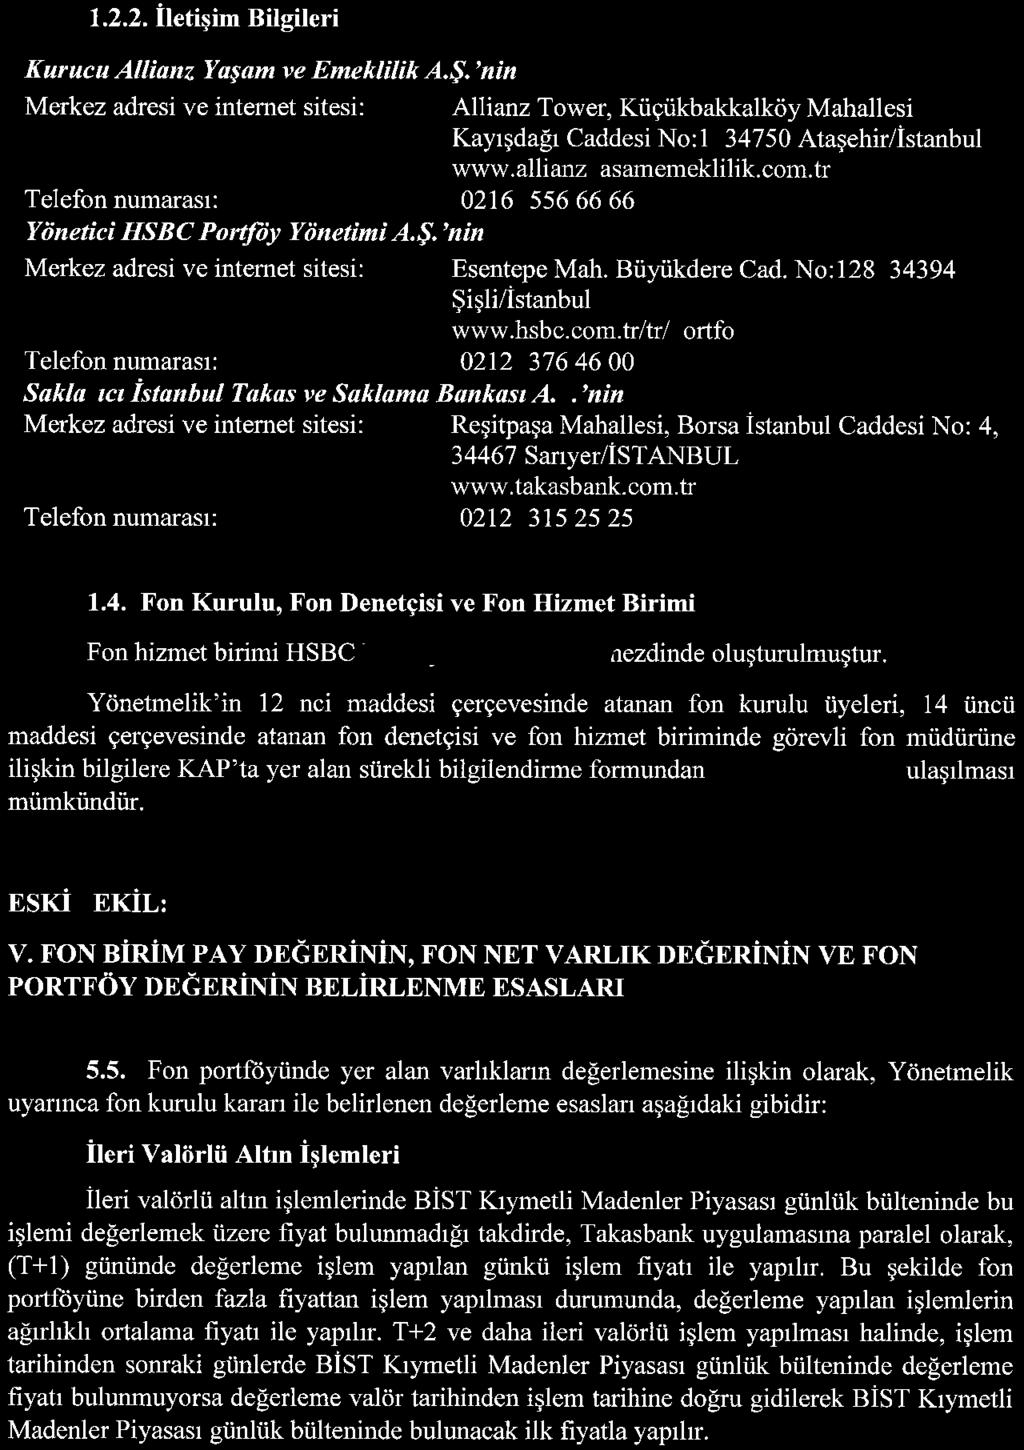 nin 06/02/2004 tarih ve PYŞ/PY/23-18 sayılı Portföy yöneticiliği yetki belgesi iptal edilerek, 6362 sayılı Sermaye Piyasası Kanunu'un 40 inci ve 55 inci maddeleri uyarınca düzenlenen 26/01/2015 ve